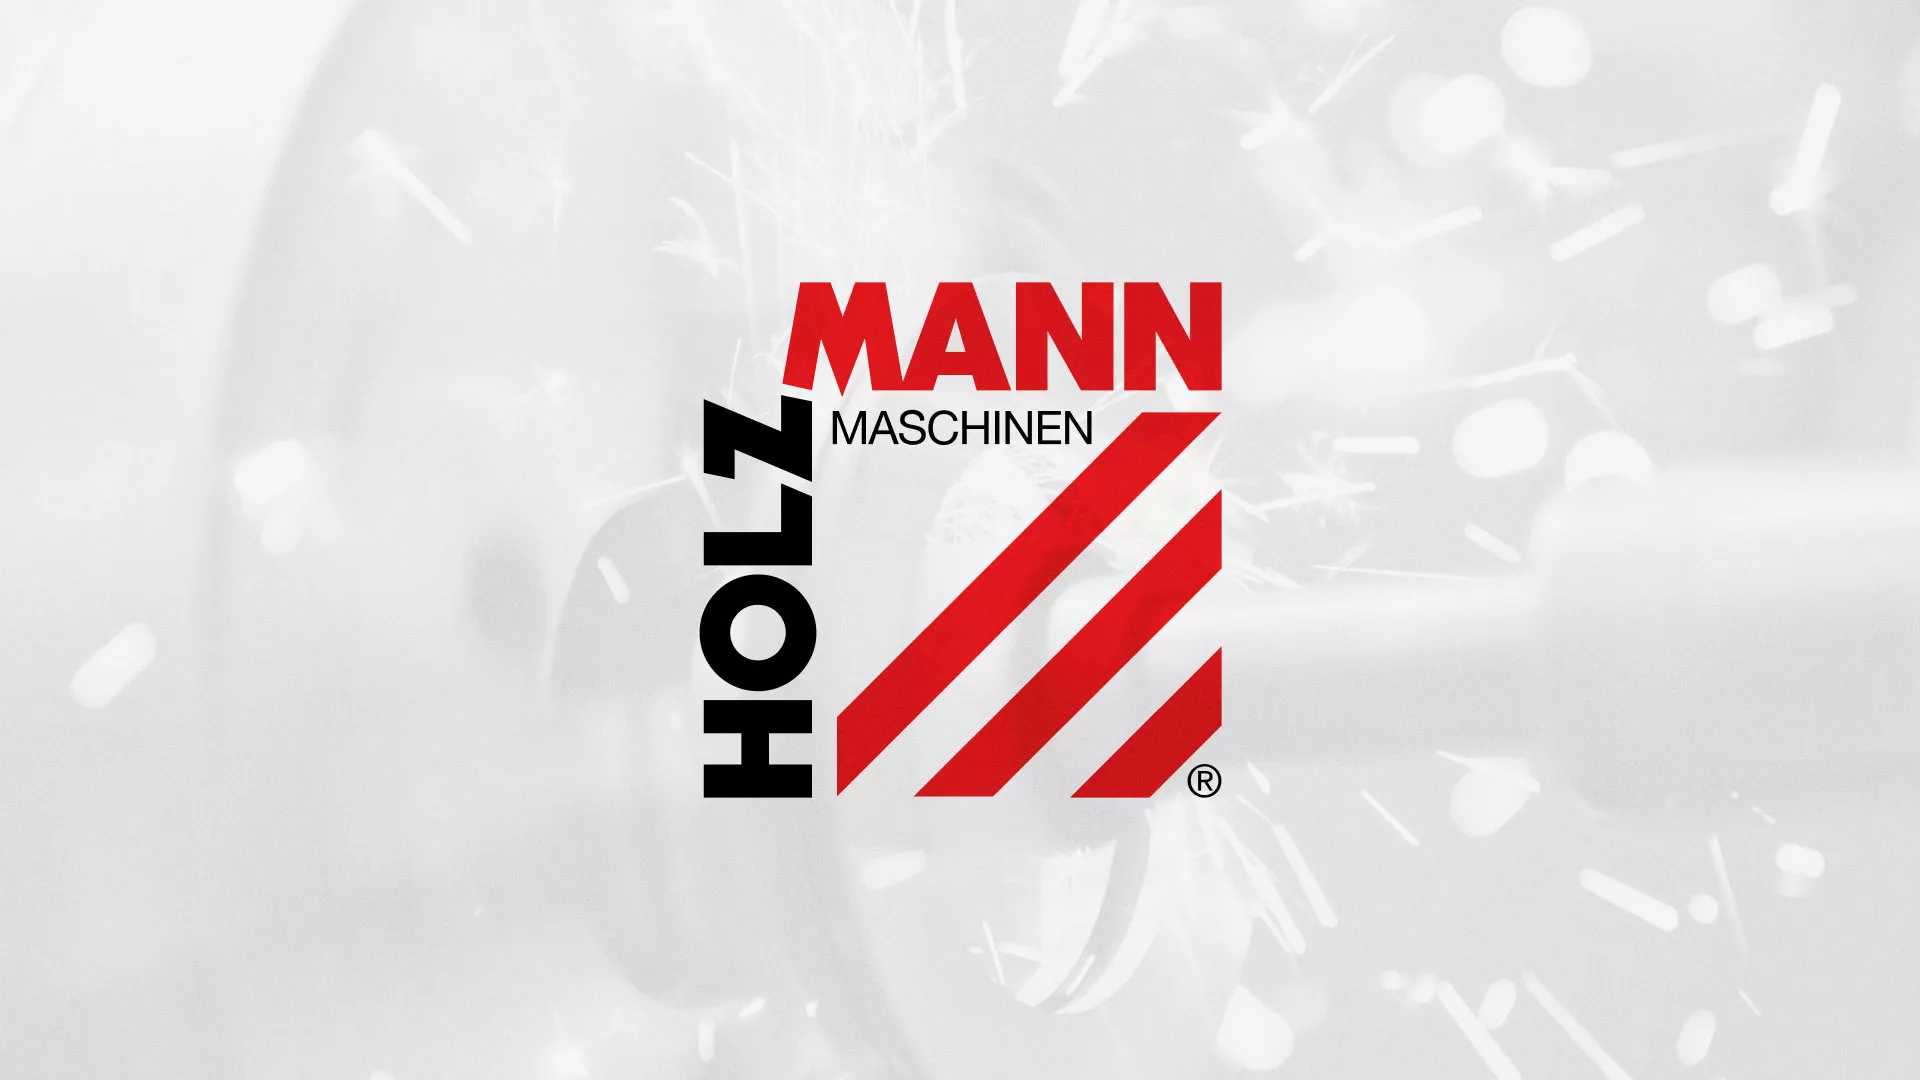 Создание сайта компании «HOLZMANN Maschinen GmbH» в Иваново